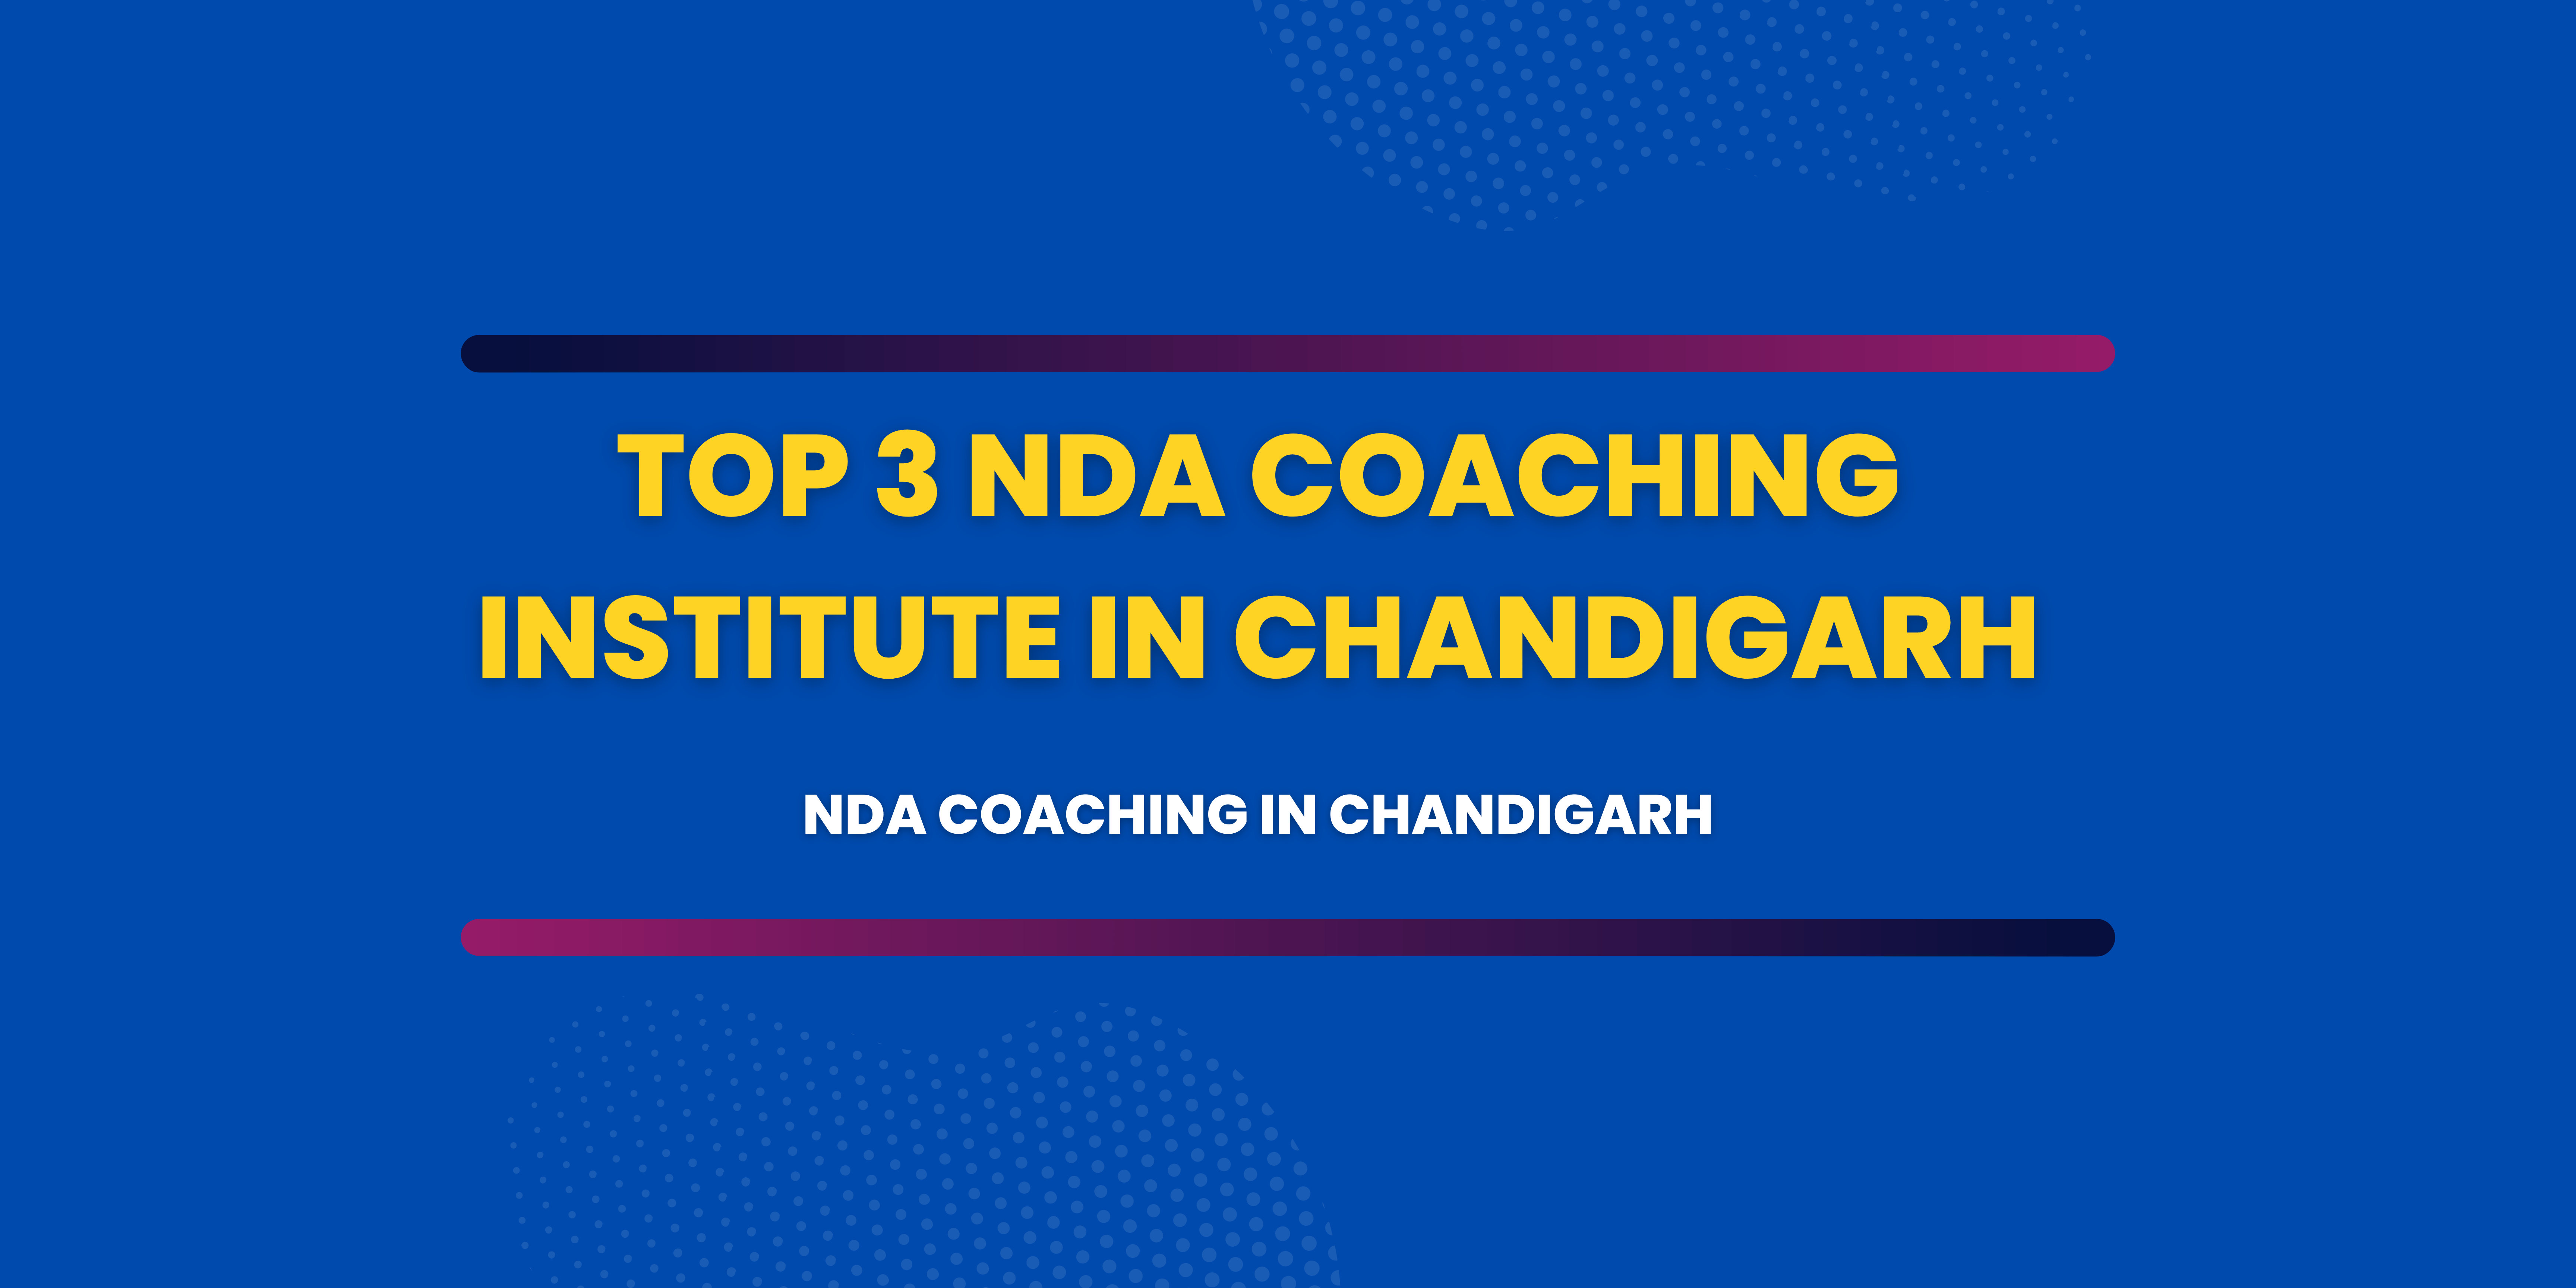 Top 3 NDA Coaching Institutes in Chandigarh